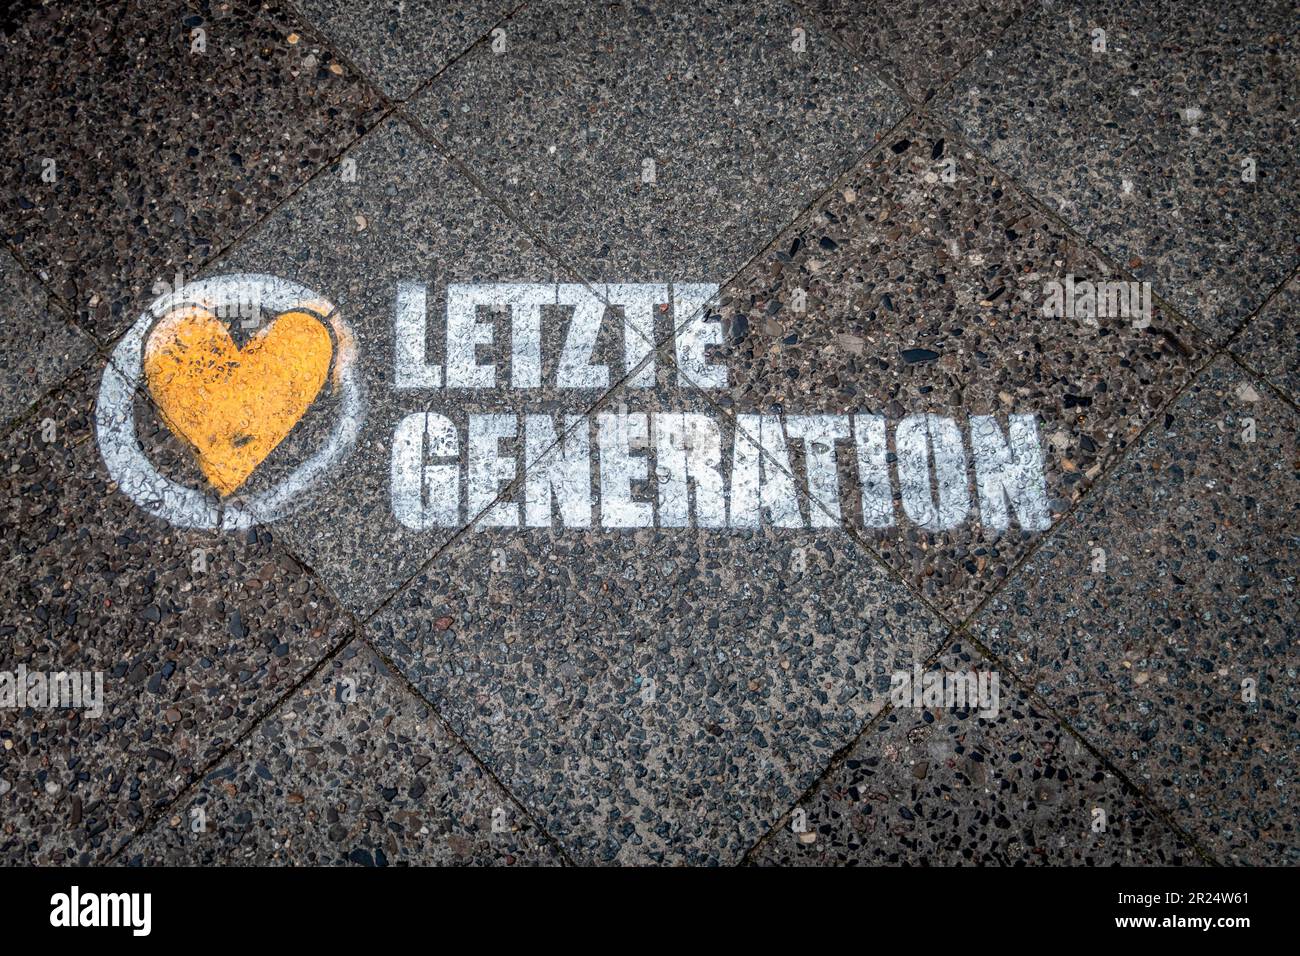 Letzte Generation, Schriftzug auf Bürgersteig, Berlin-Neukölln Stock Photo